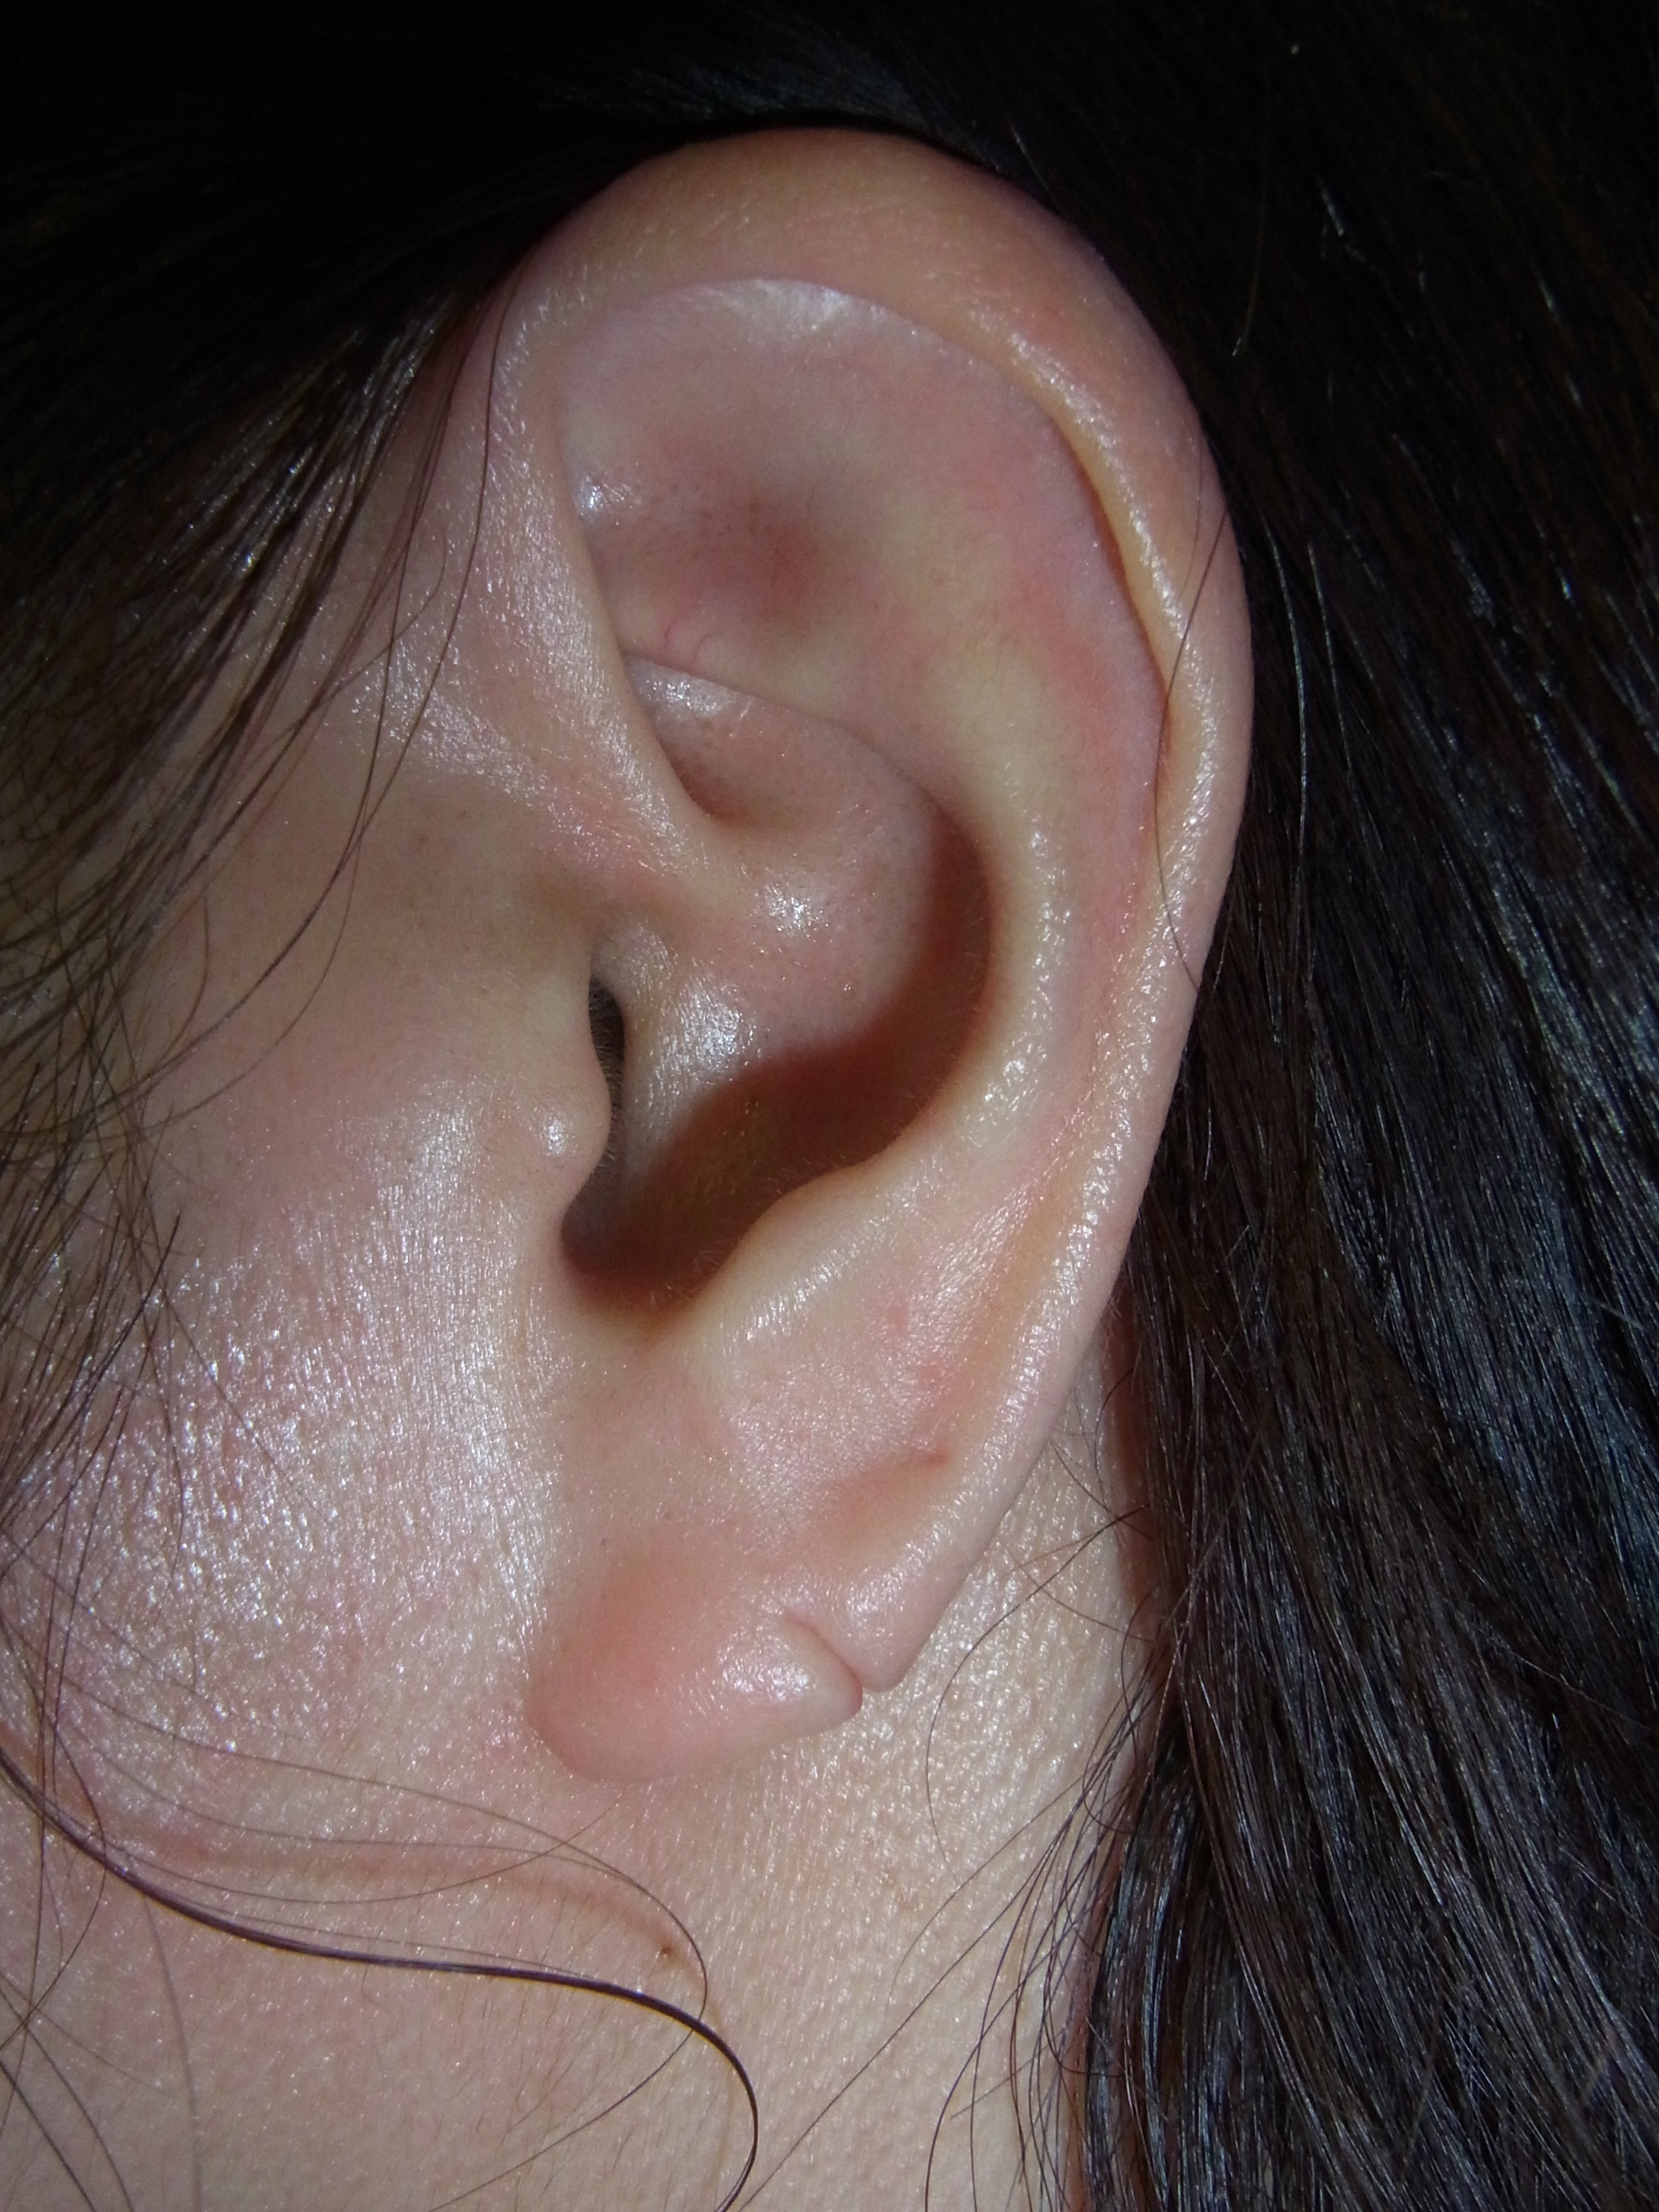 ピアスによる耳切れ耳垂裂がこんなにきれいになります 画像あり 神楽坂肌と爪のクリニック